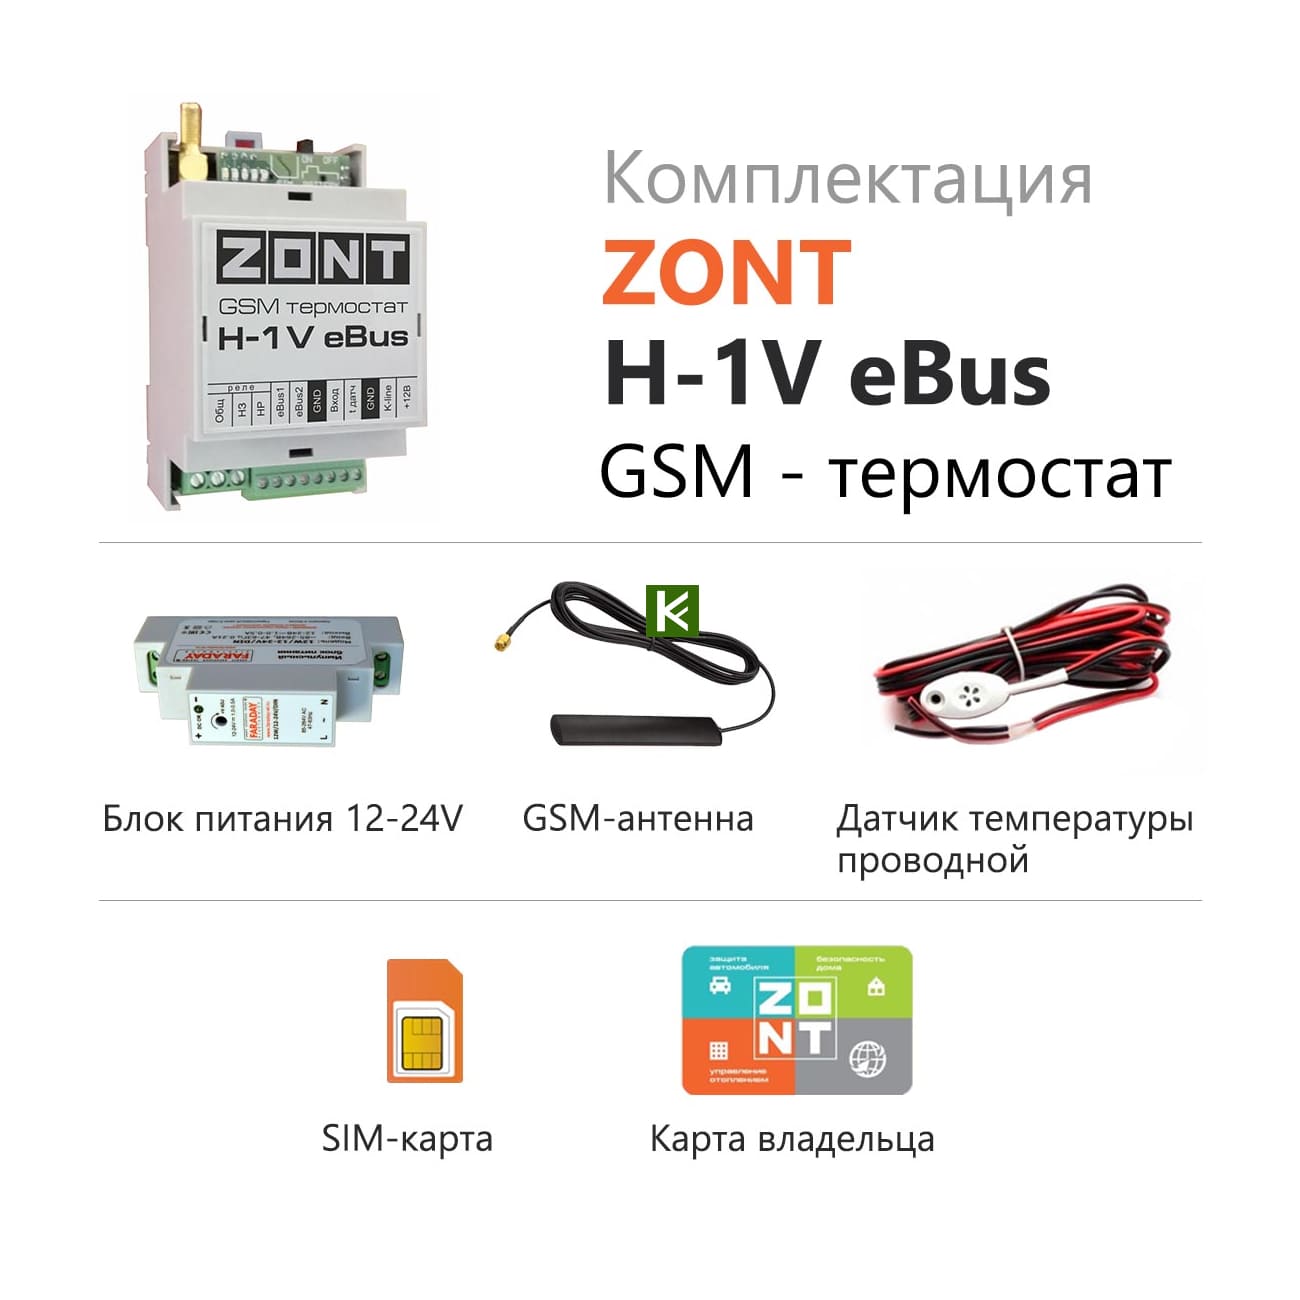 Блок zont. Zont-h1v EBUS GSM-термостат. GSM-термостат Zont h-1. GSM-термостат Zont h-1v. GSM термостат Zont h-1v e-Bus.